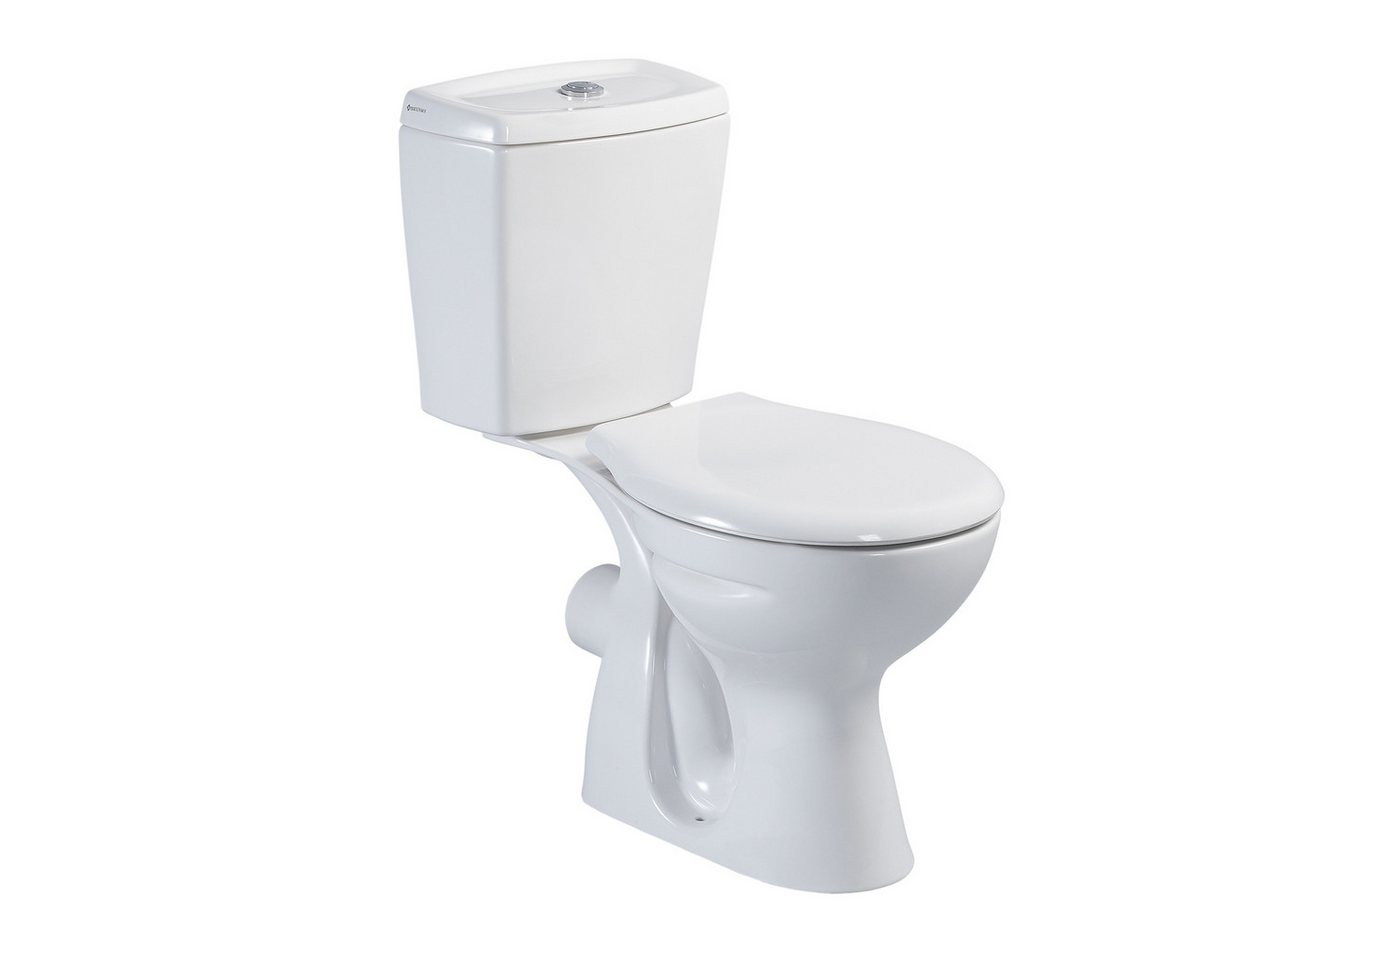 Belvit Tiefspül-WC S-ESW001, bodenstehend, Abgang waagerecht, Stand-WC mit Spülkasten und Soft-Close Deckel von Belvit